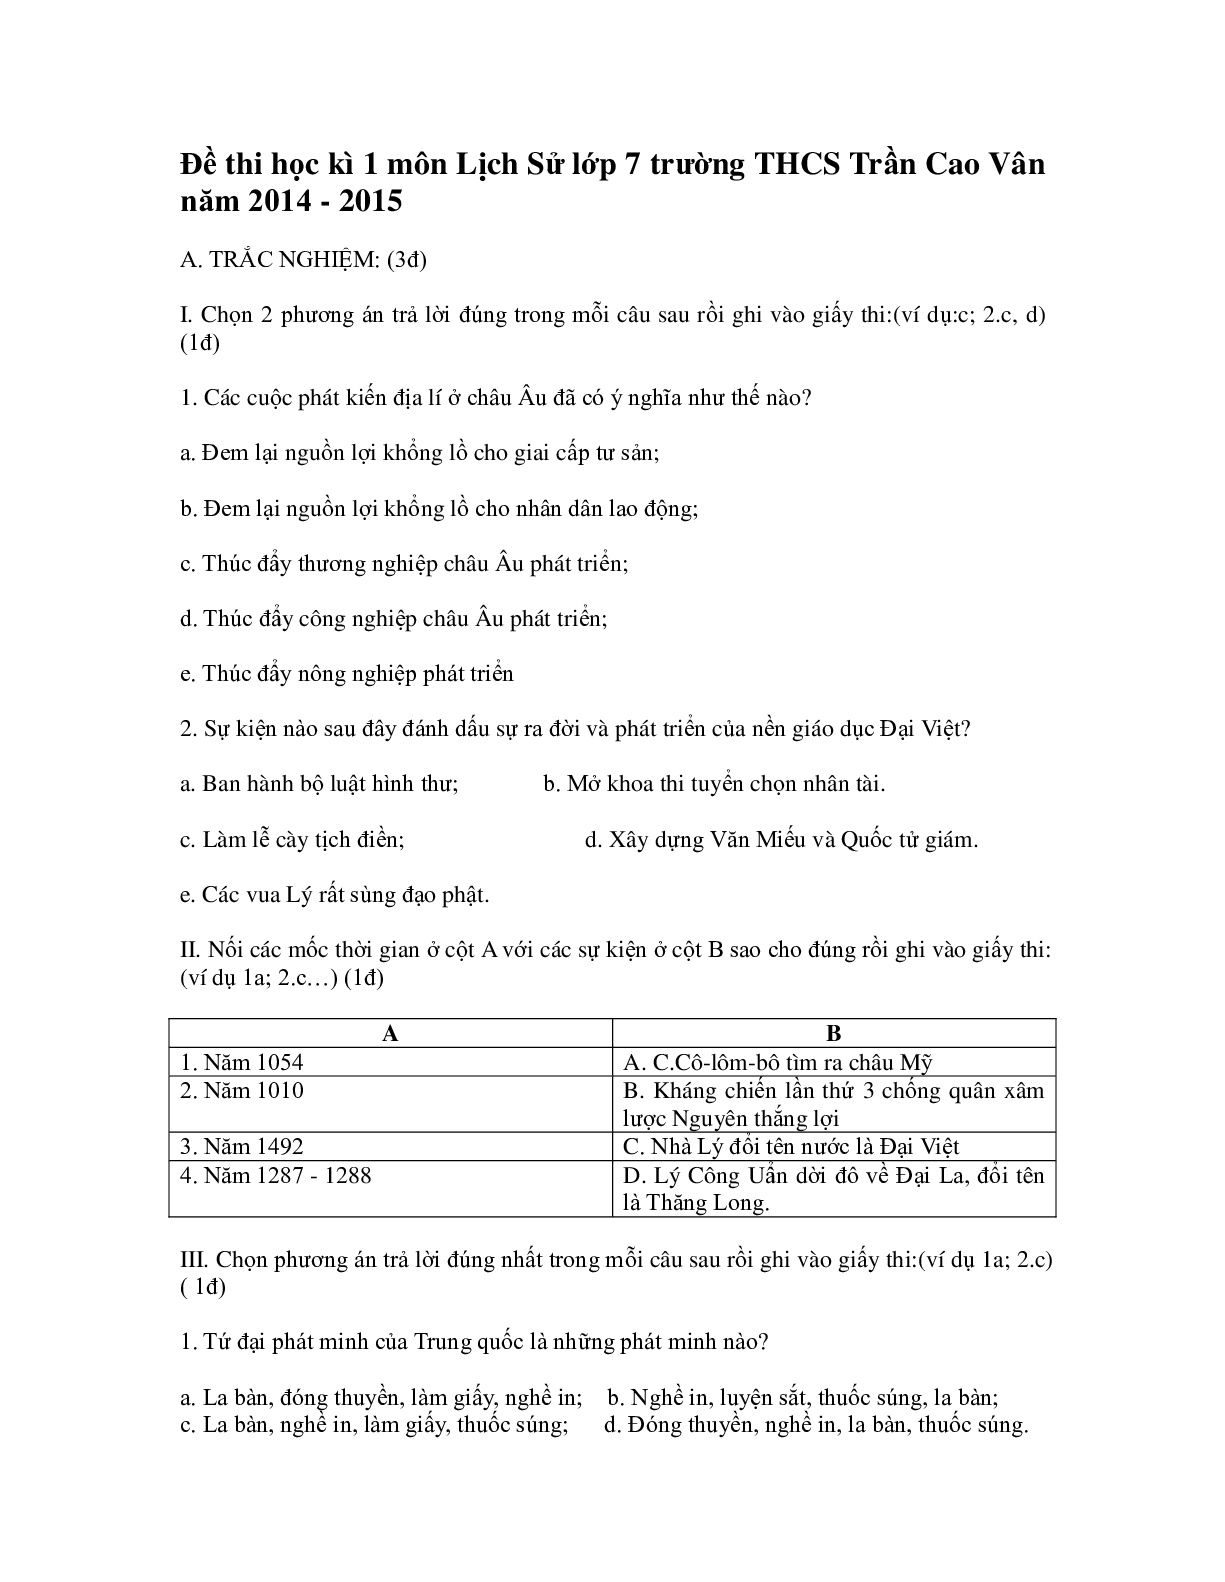 Đề thi Học kì 1 Lịch sử lớp 7 có đáp án (4 đề) (trang 4)